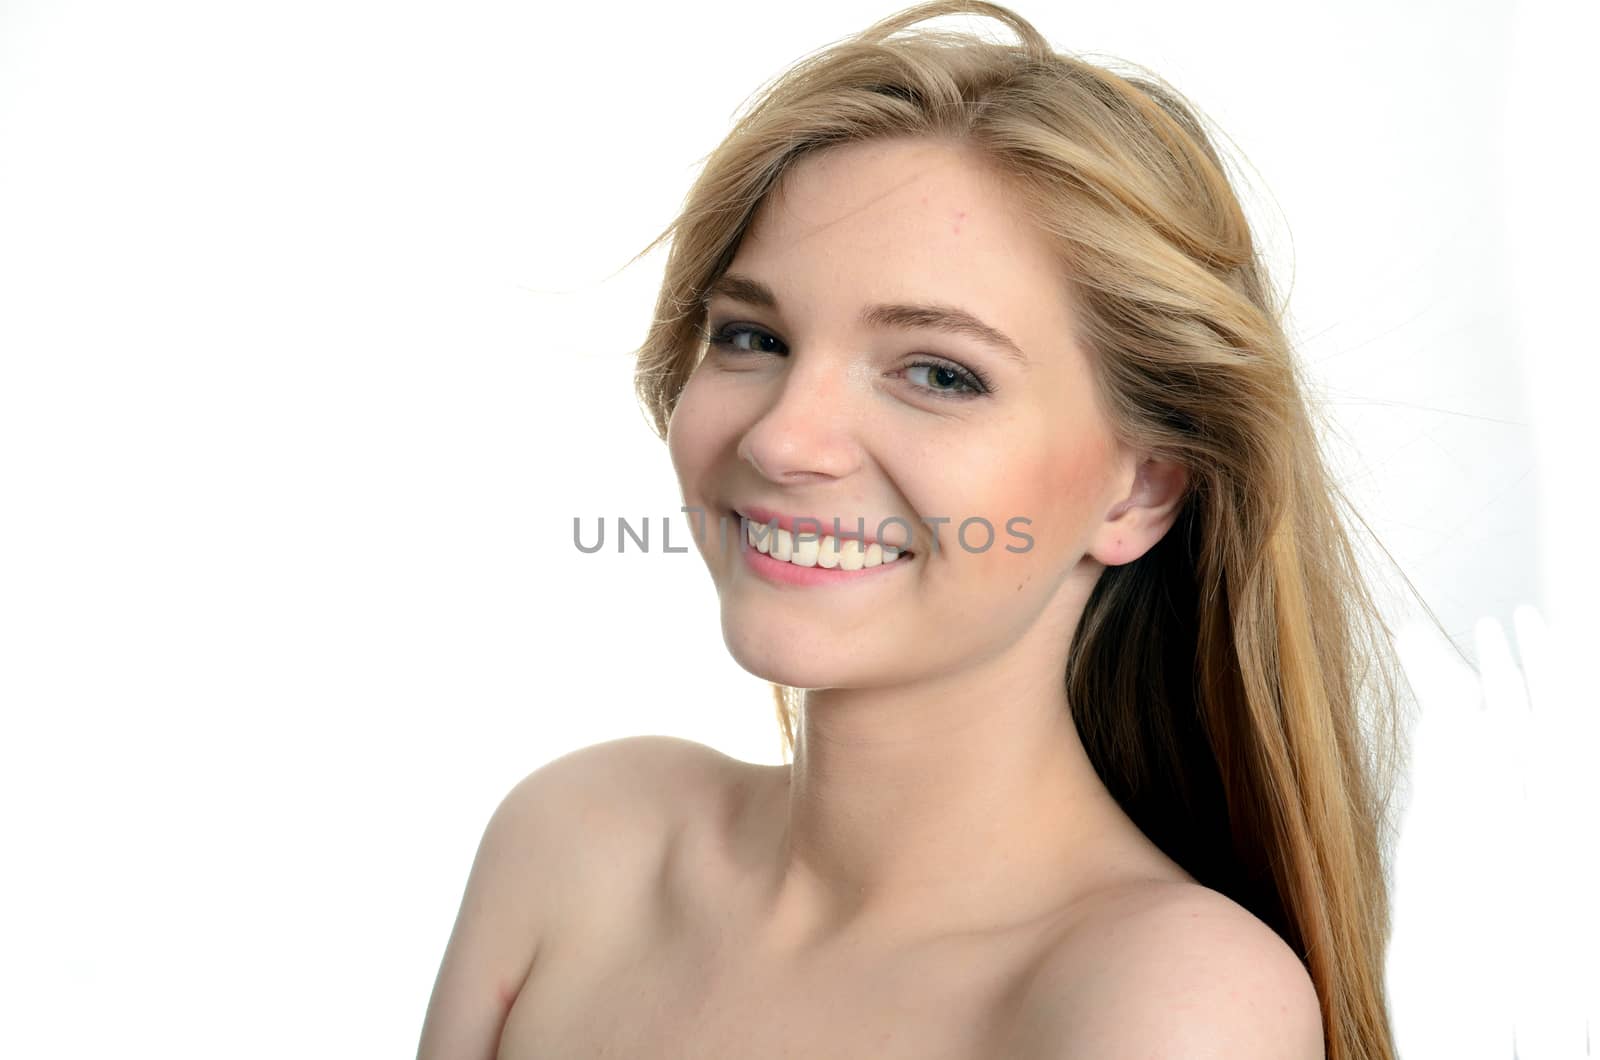 Pretty smiling girl by bartekchiny